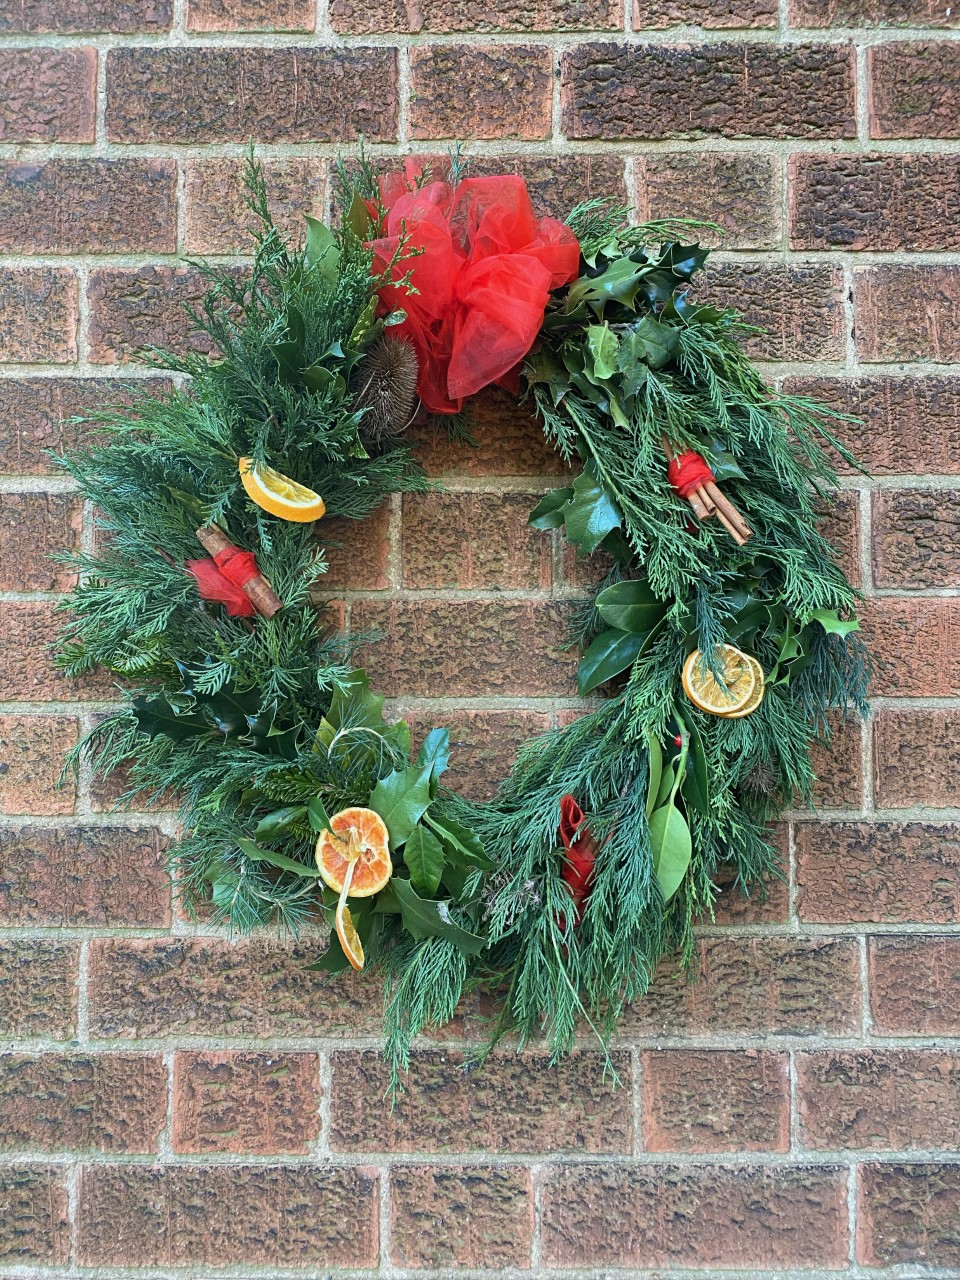 A Christmas wreath